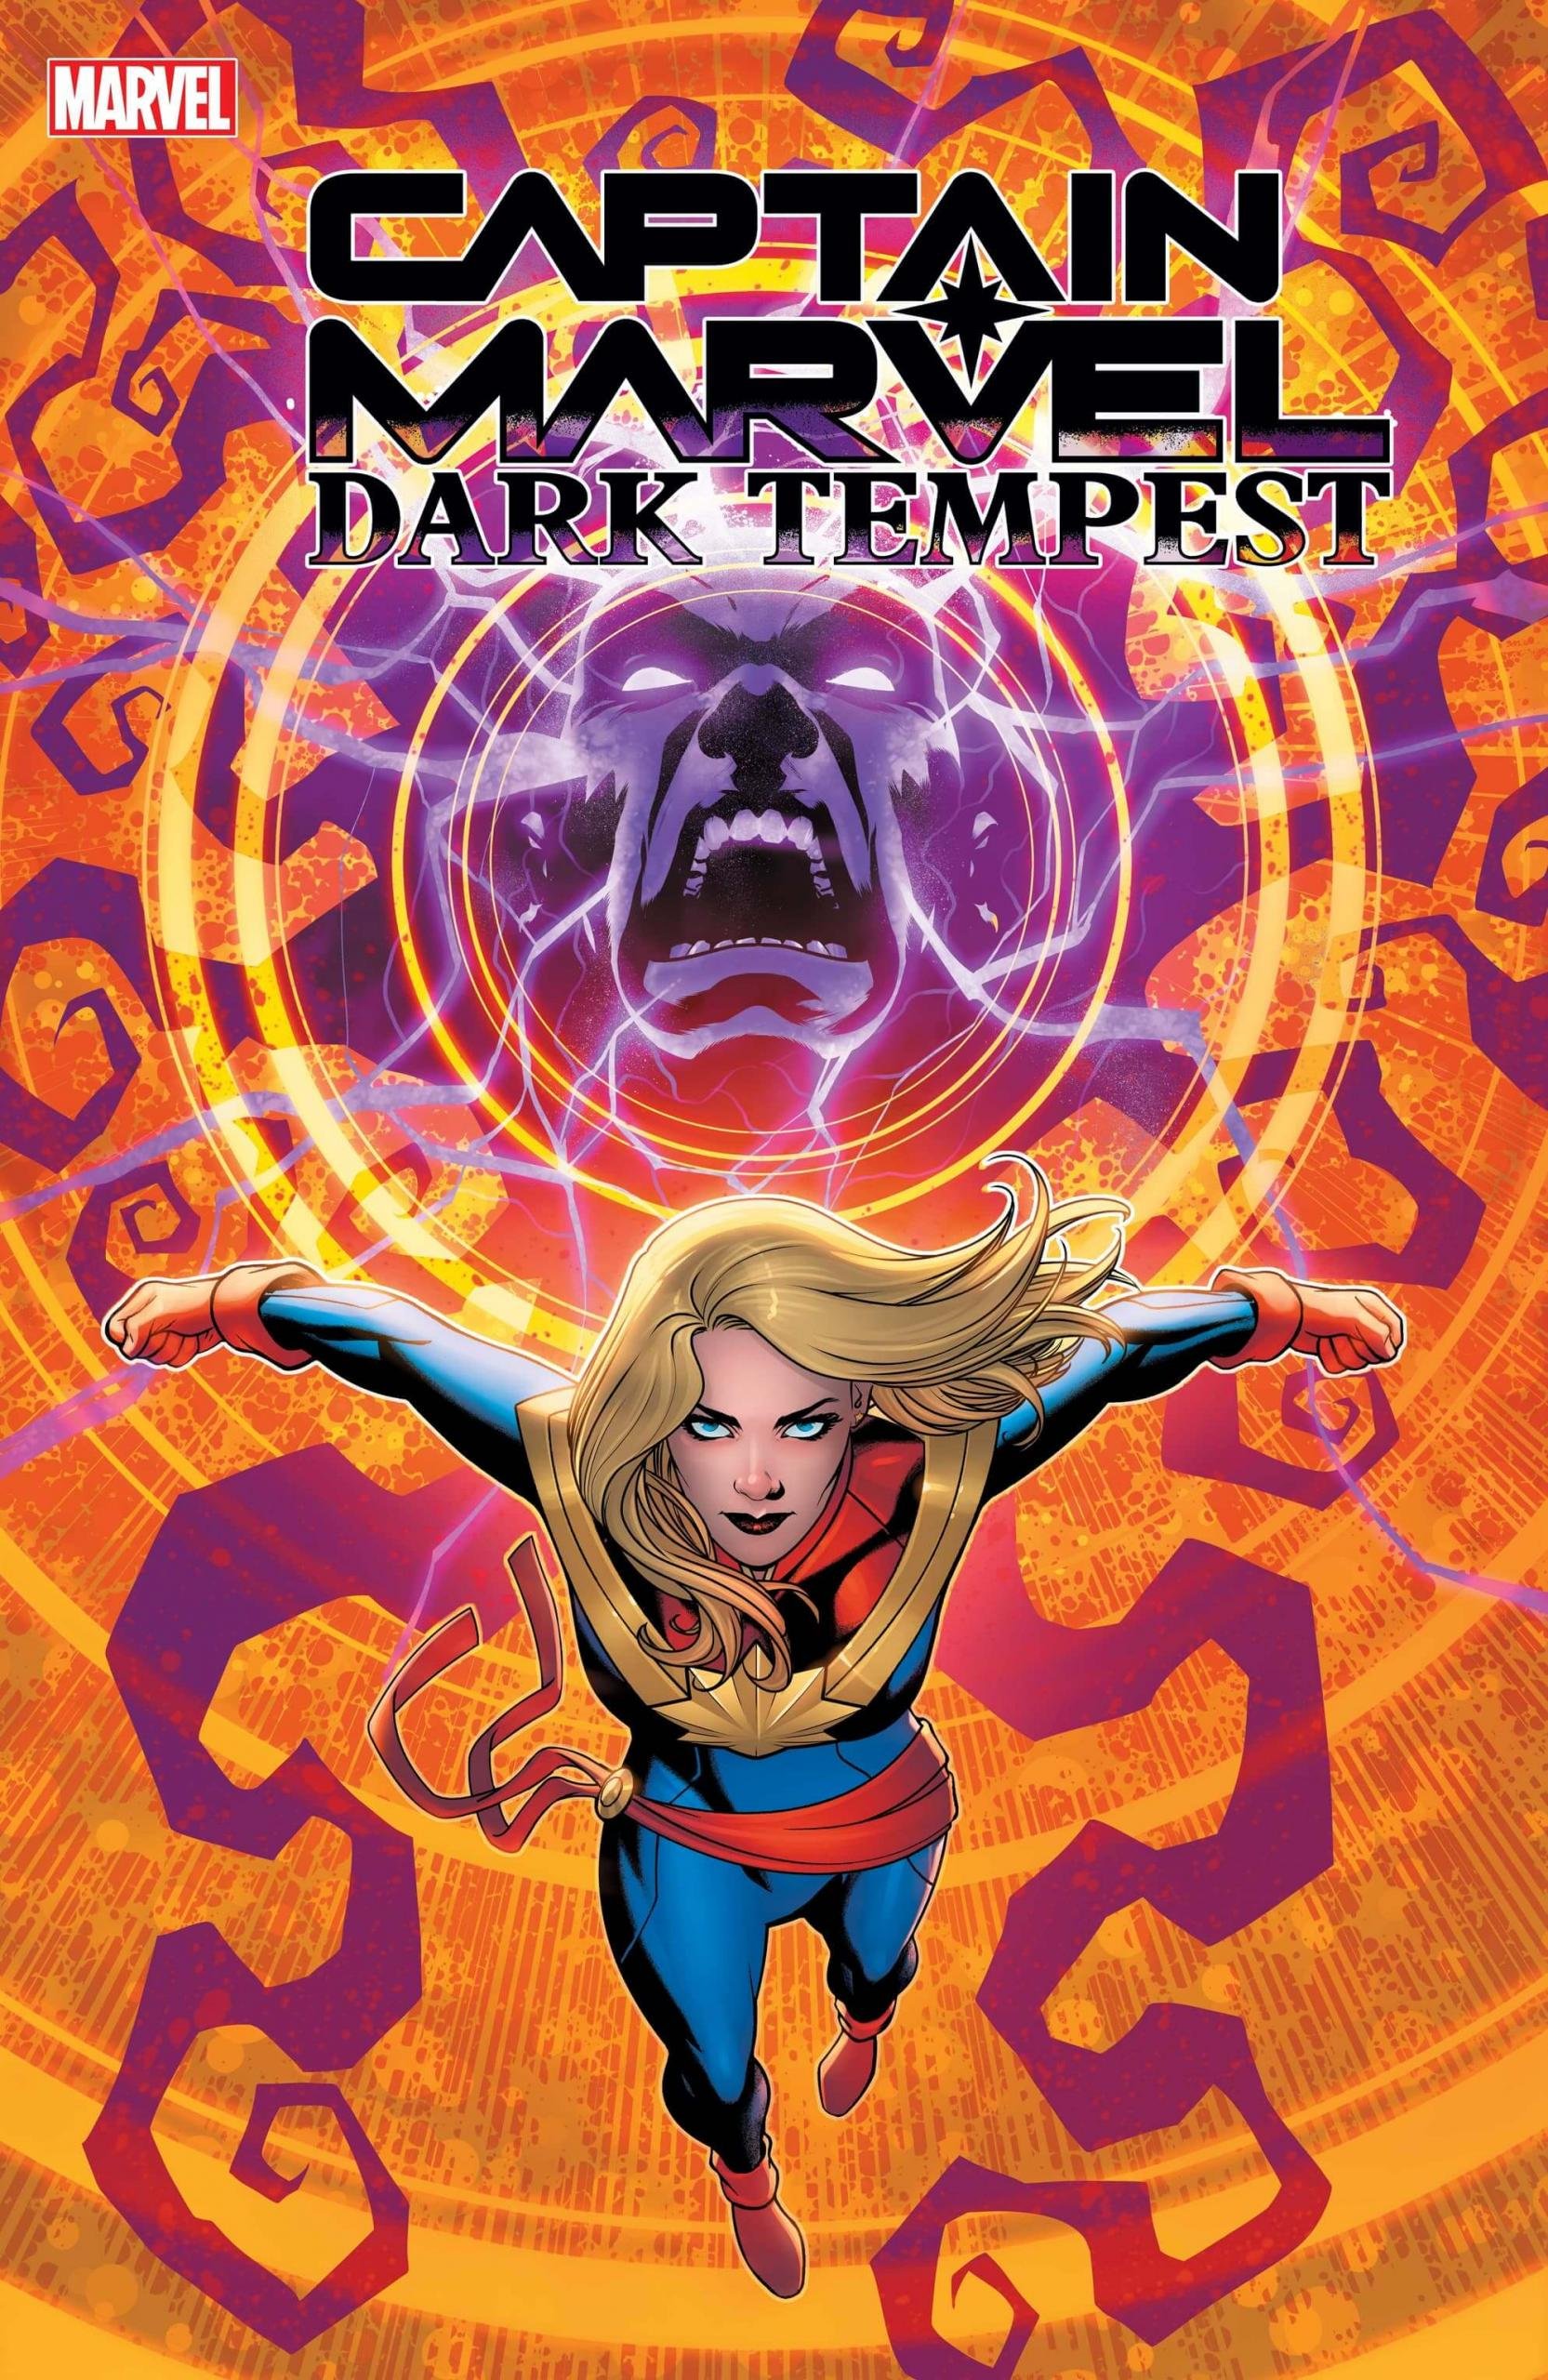 Couverture par Mike McKone de Captain America : Dark Tempest 1, nouvelle mini-série d'Ann Nocenti et Paolo Villanelli.